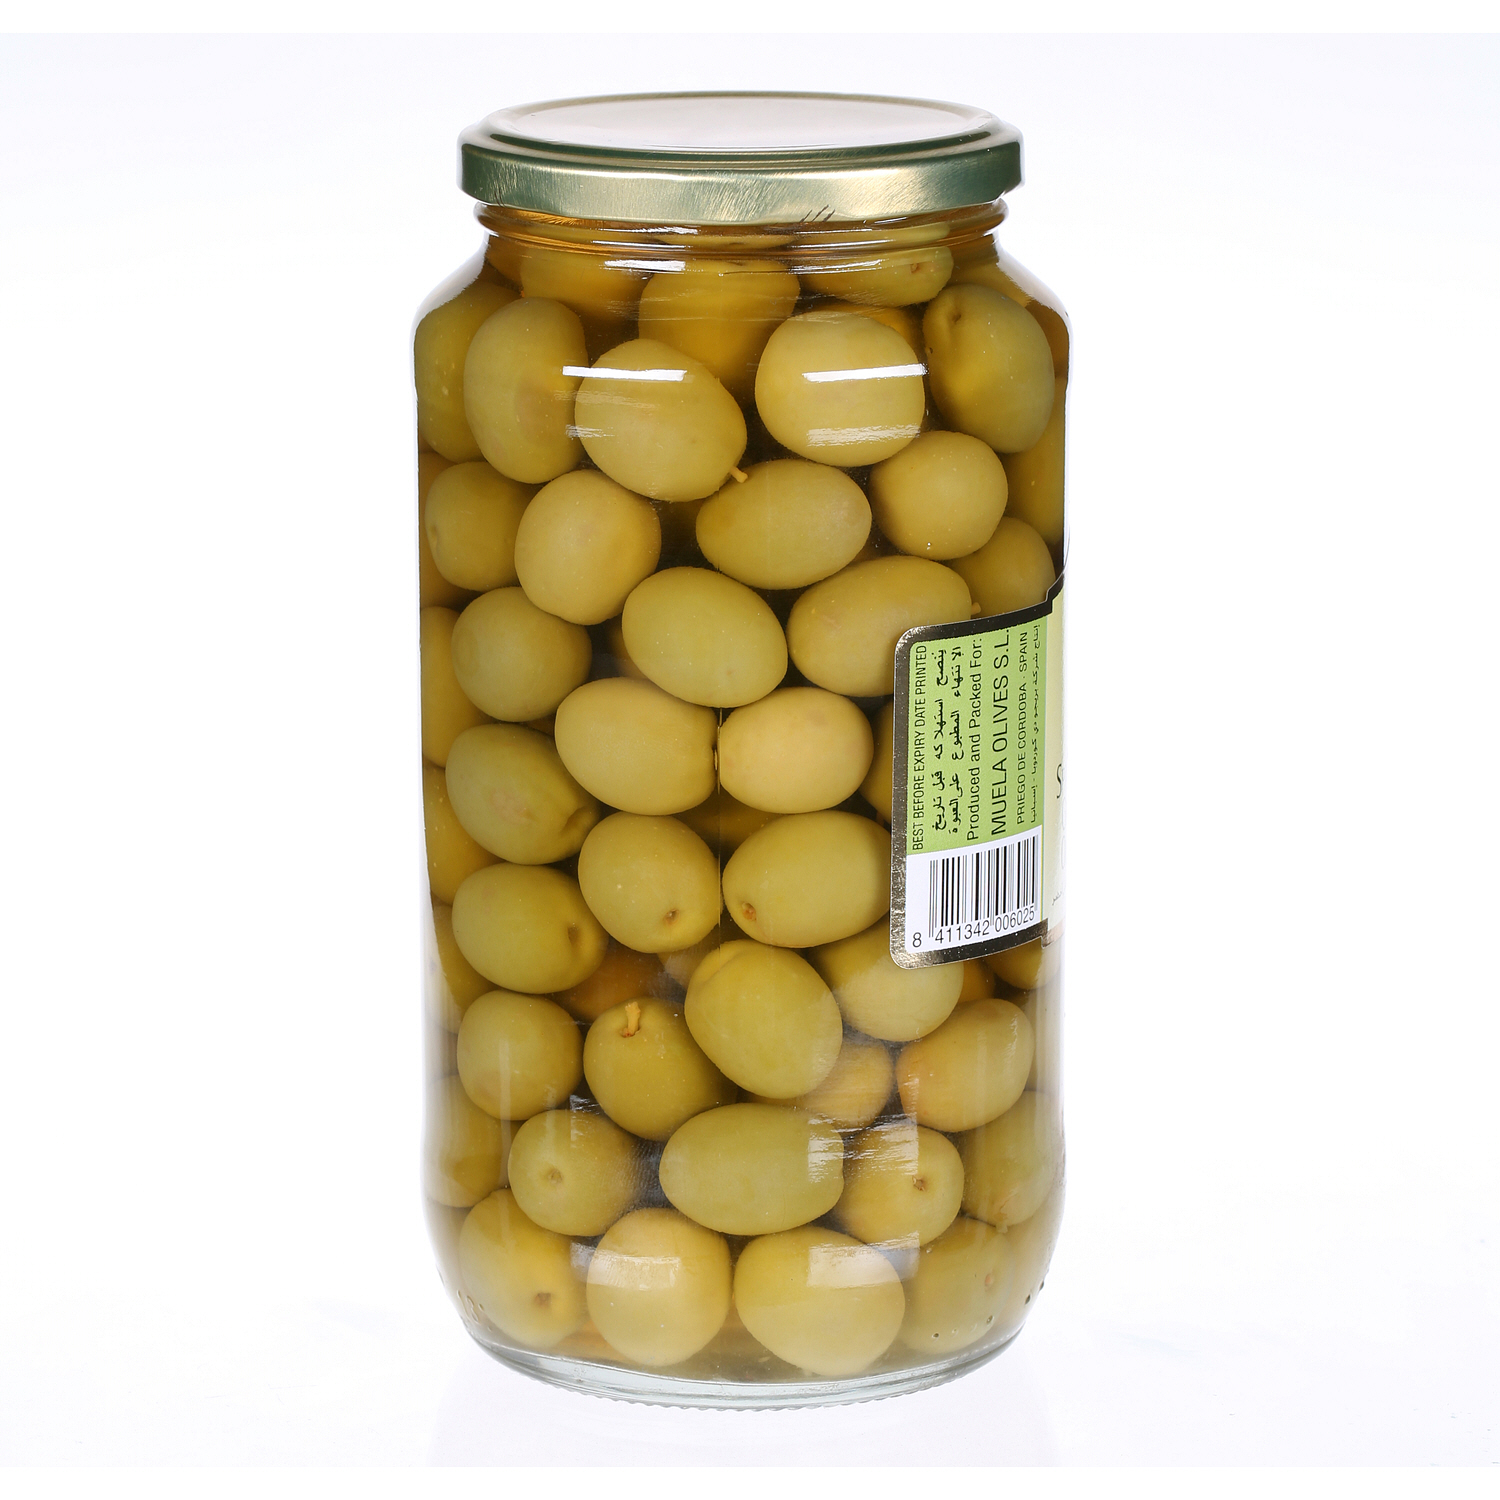 Cordoba Plain Green Olives 575 g